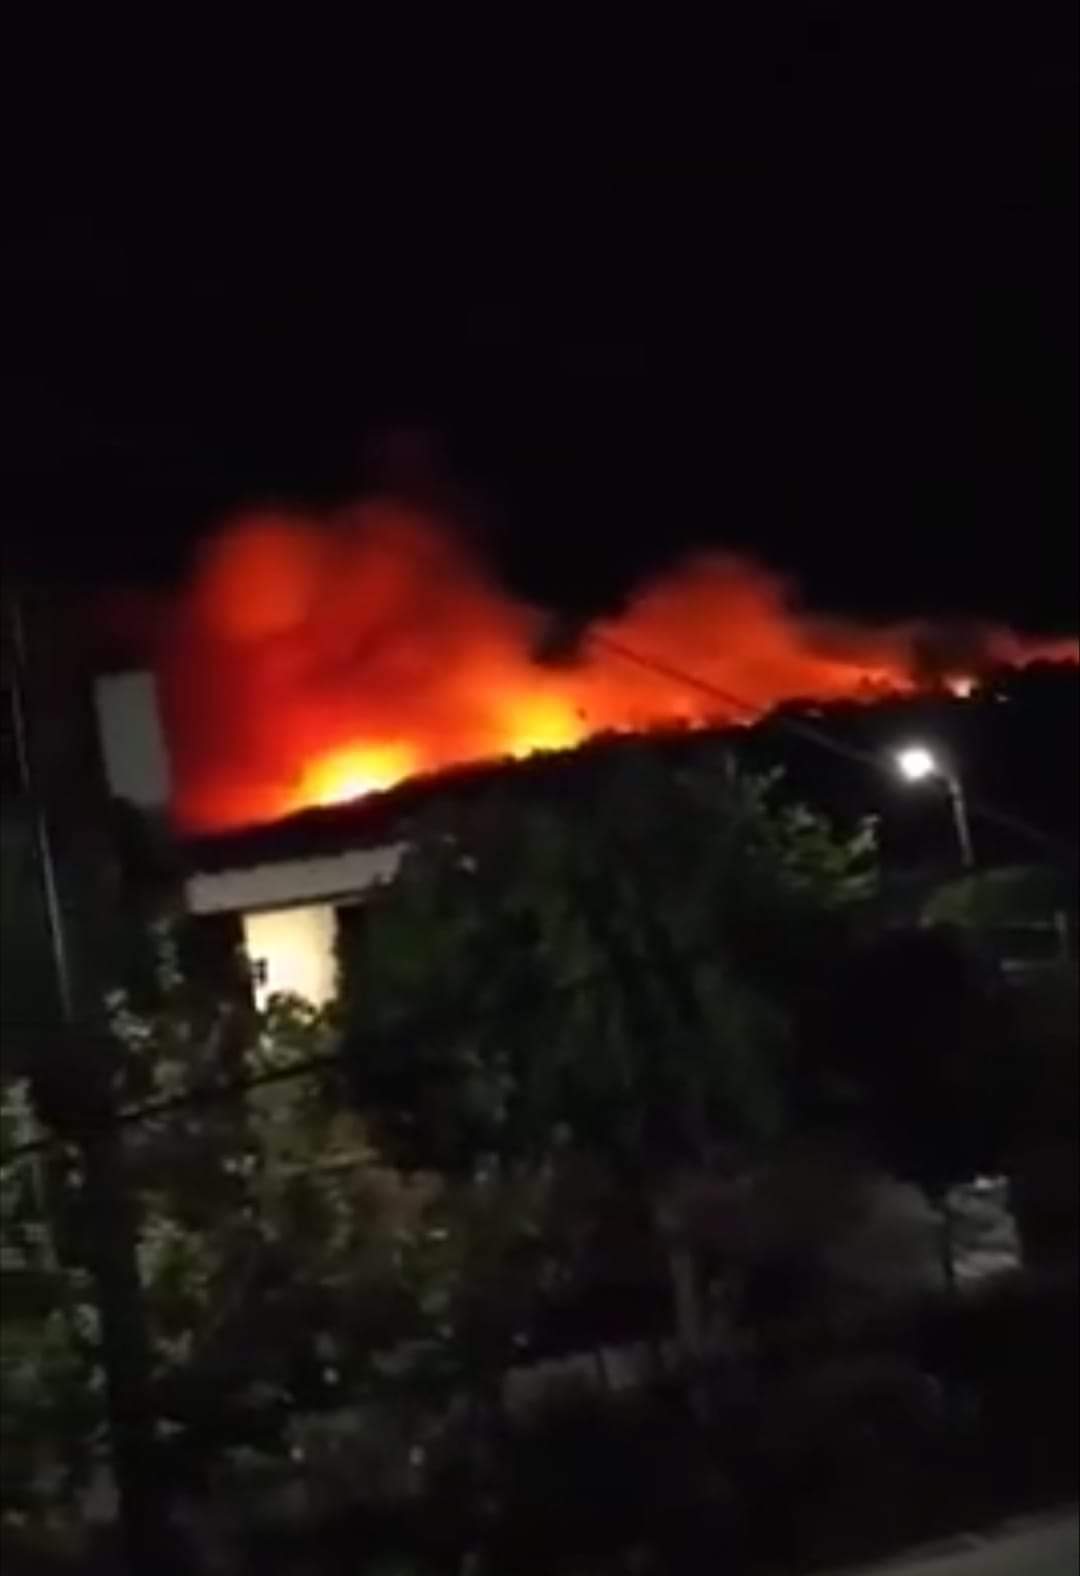 Μεγάλη φωτιά στο Σχίνο Λουτρακίου - Οι φλόγες έφτασαν στα σπίτια- Εκκενώνονται δύο χωριά - ΚΟΡΙΝΘΙΑ